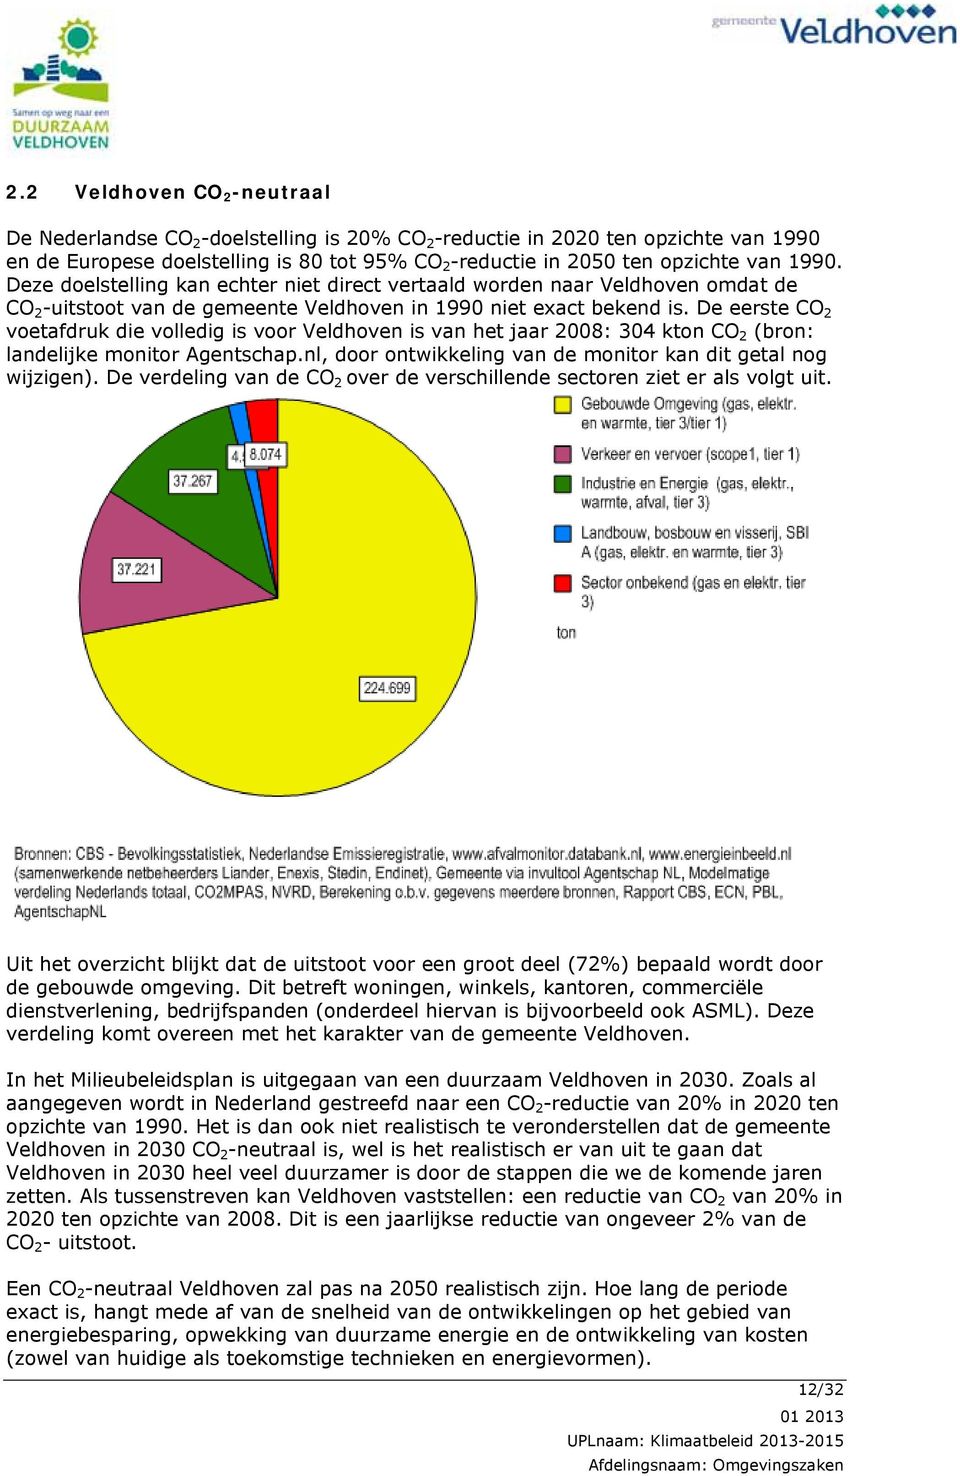 De eerste CO 2 voetafdruk die volledig is voor Veldhoven is van het jaar 2008: 304 kton CO 2 (bron: landelijke monitor Agentschap.nl, door ontwikkeling van de monitor kan dit getal nog wijzigen).